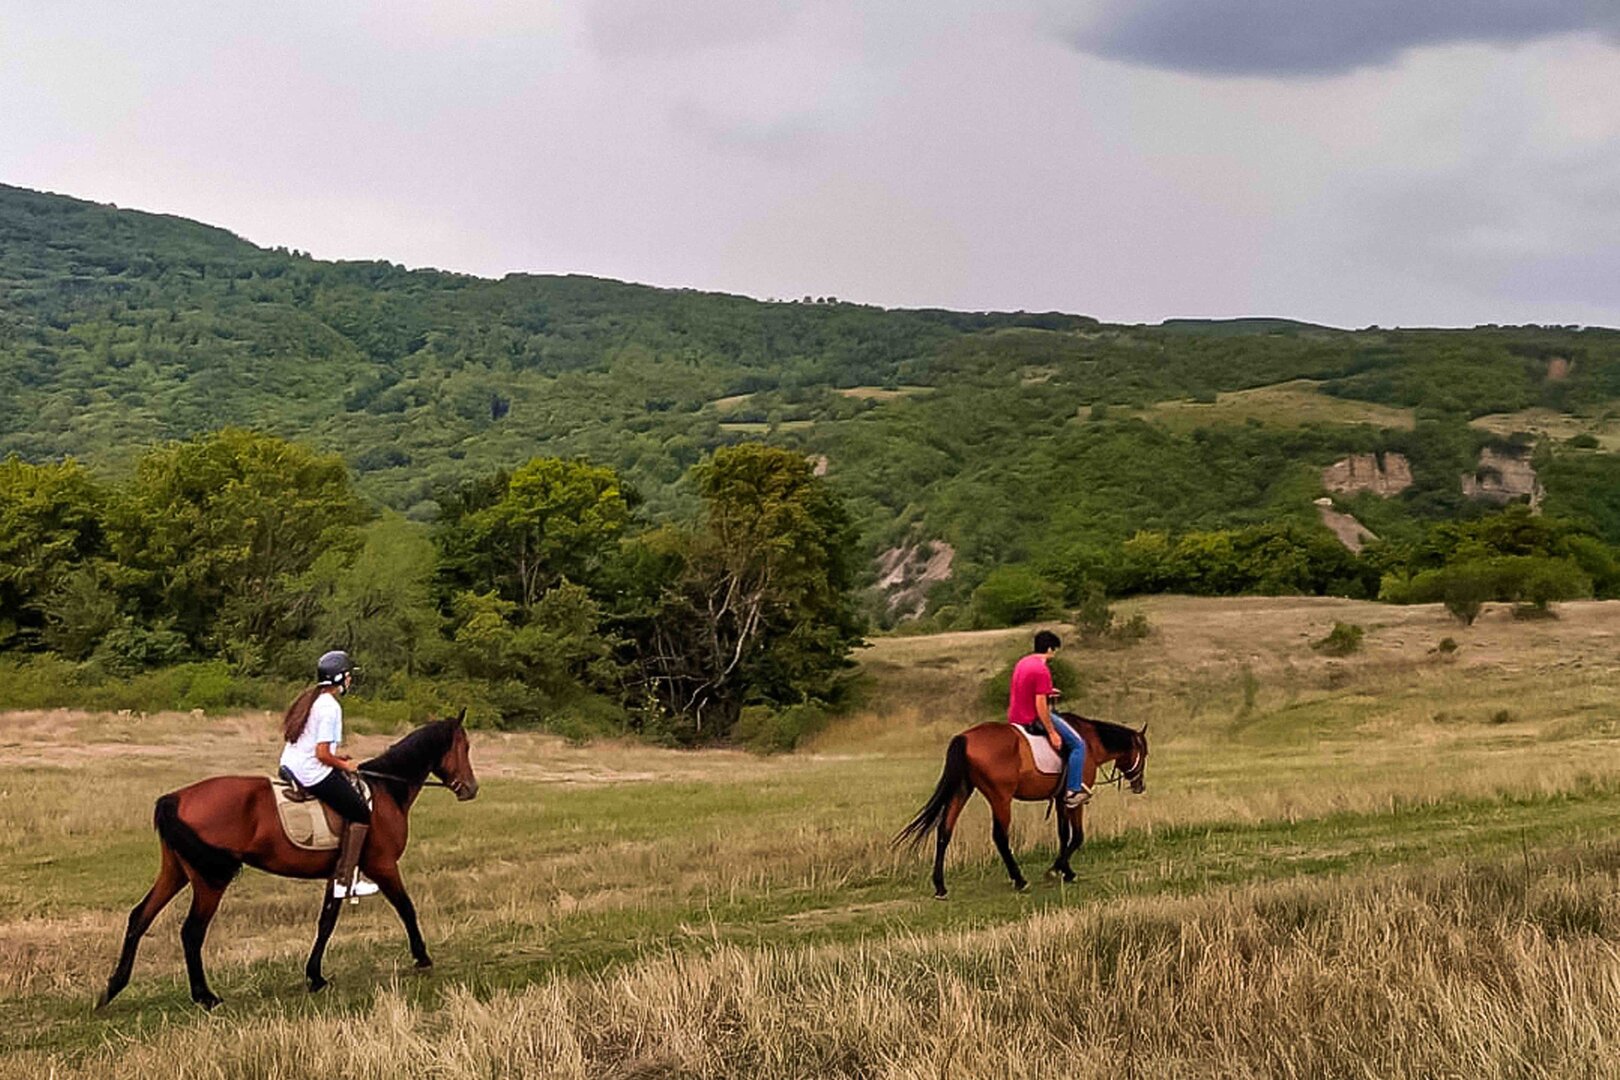 A Half-Day Horseback Riding Tour